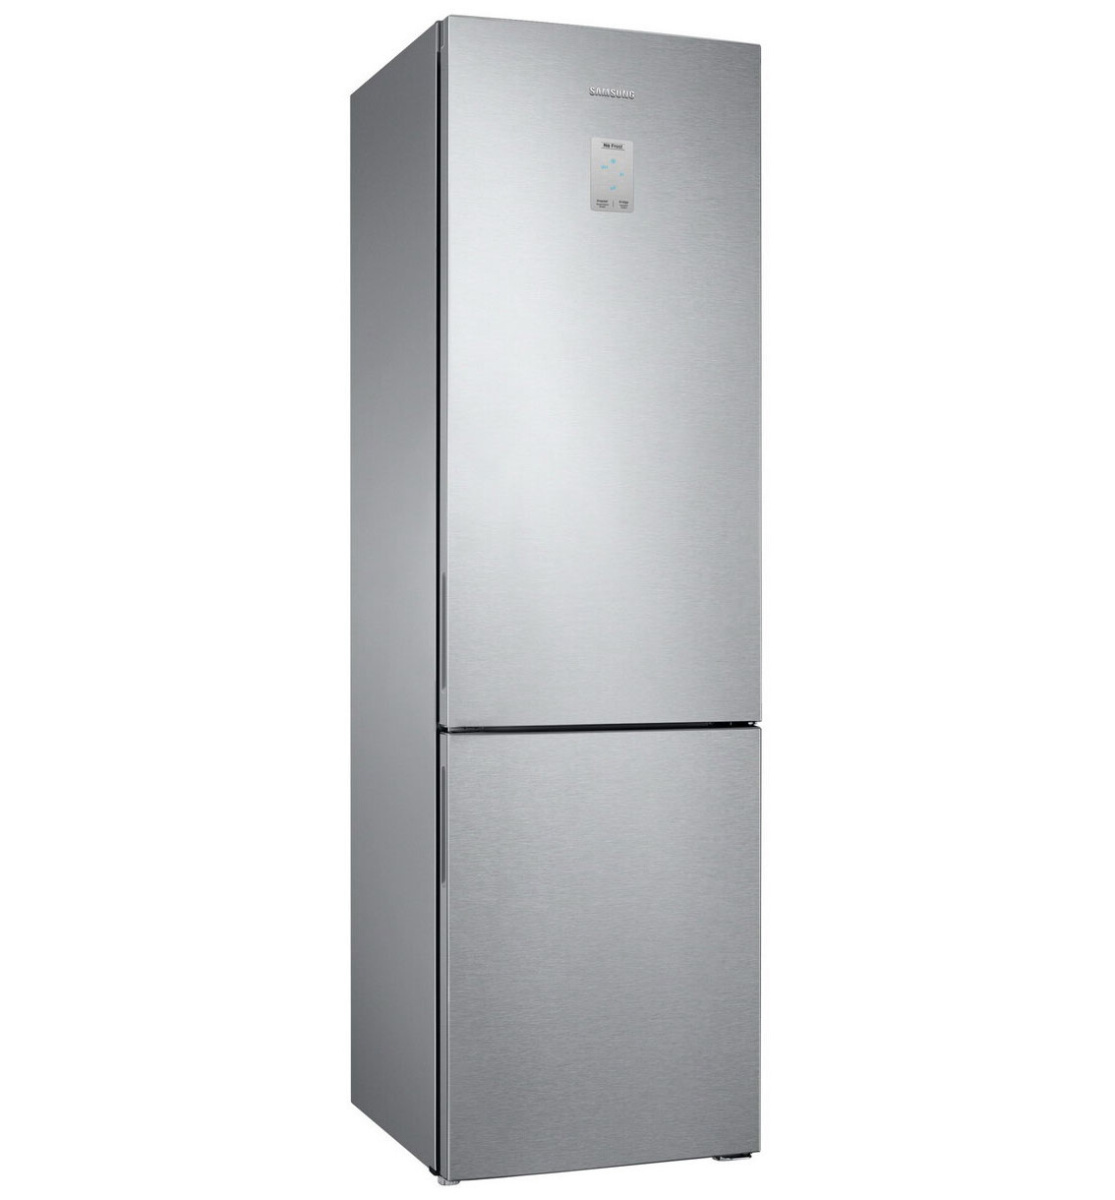 Холодильники индезит отзывы специалистов и покупателей. Холодильник don r 299.